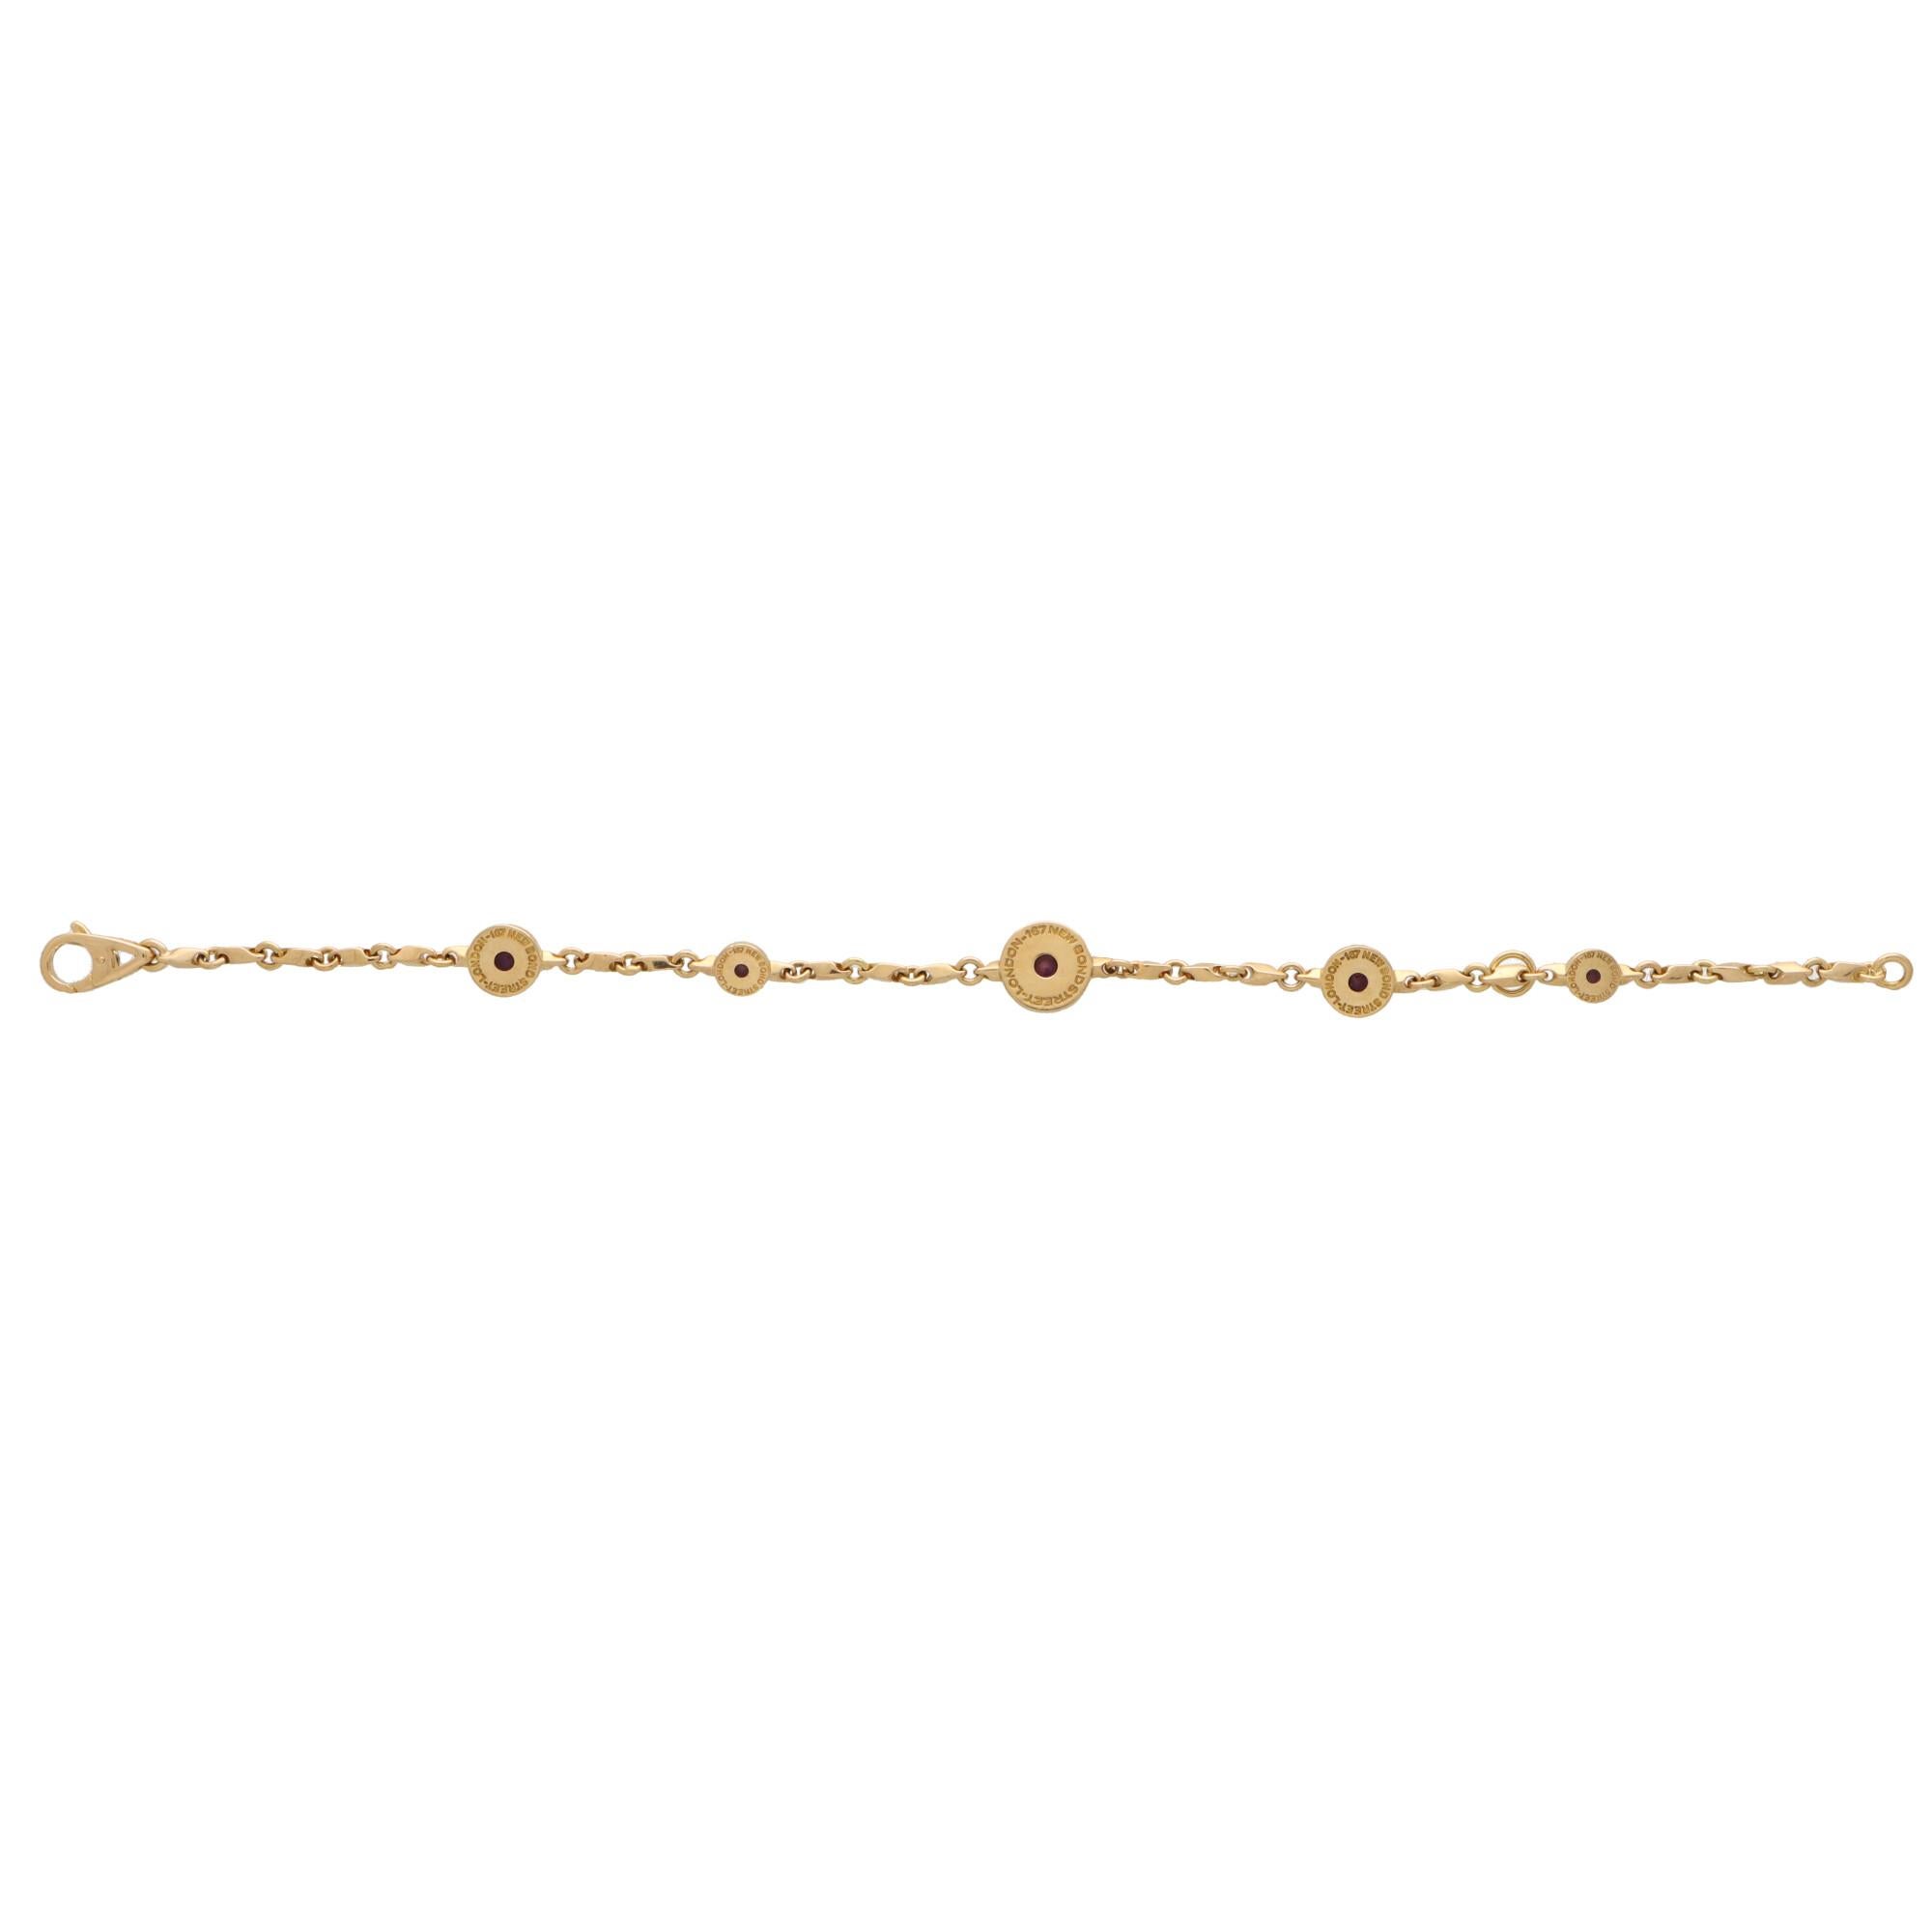 Taille cabochon Asprey, bracelet vintage en or jaune 18 carats serti de 167 boutons d'améthyste